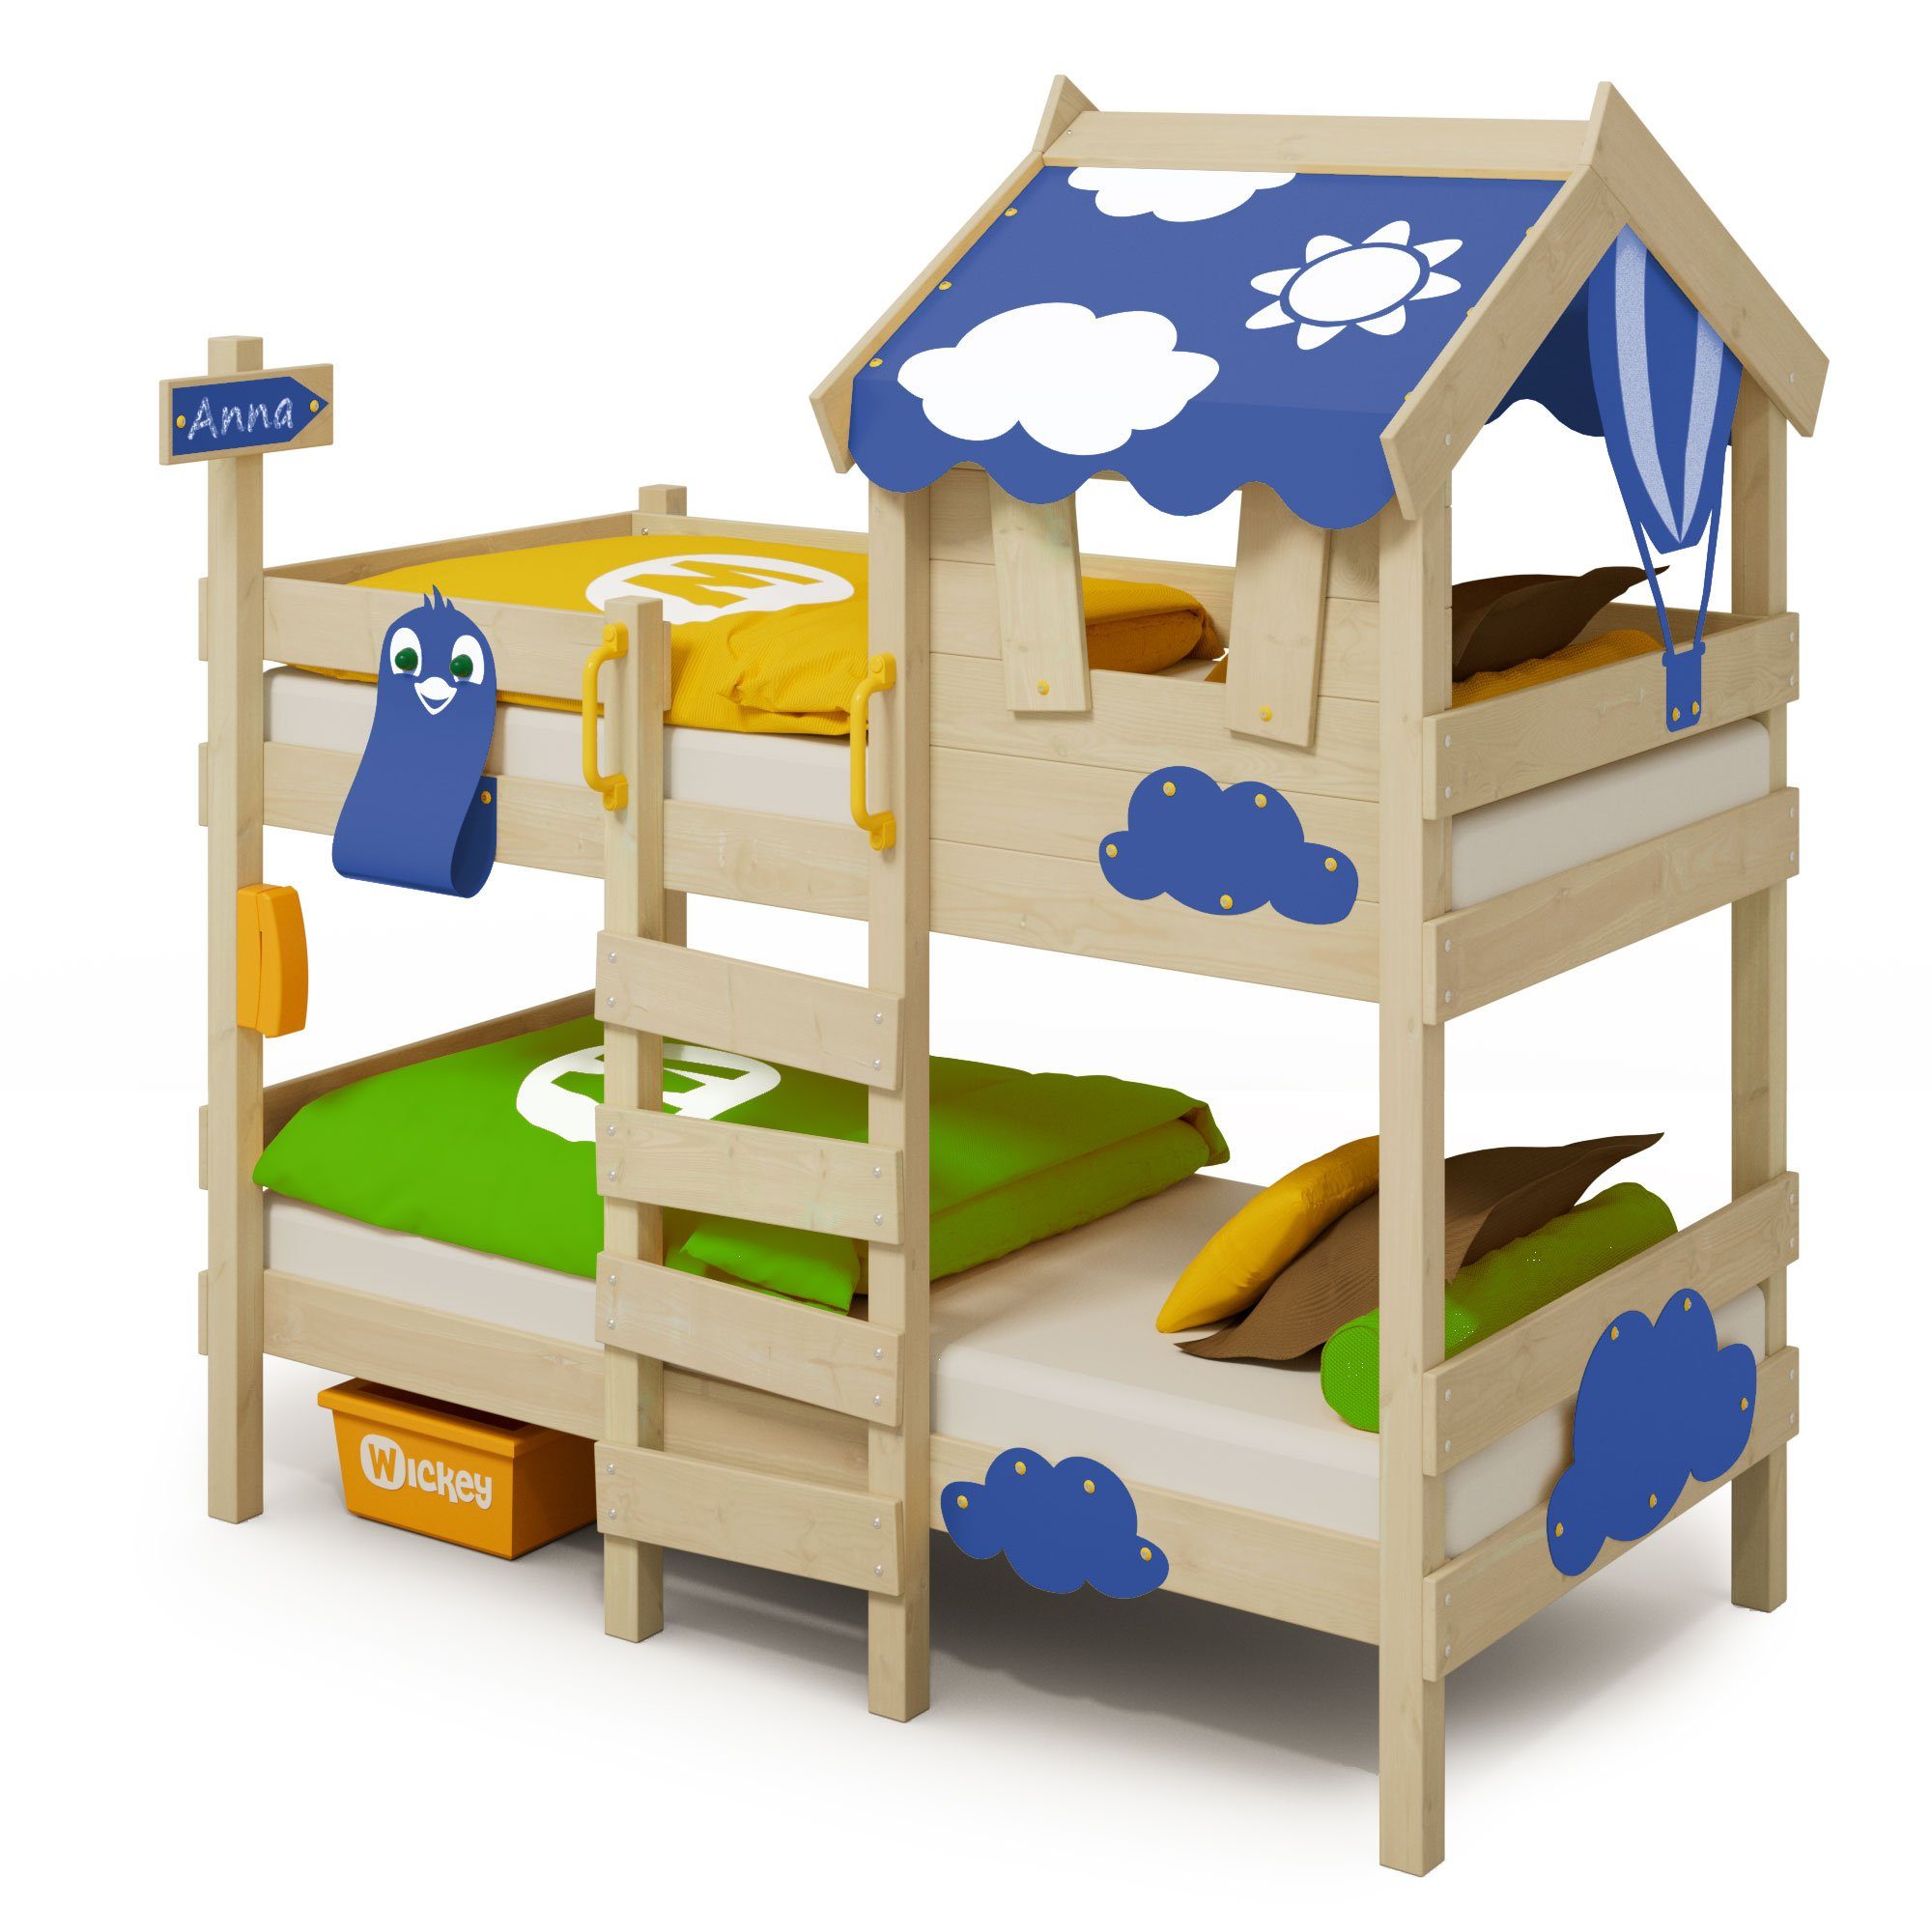 Wickey Kinderbett Crazy Daisy - Hochbett, Spielbett 90 x 200 cm (Holzpaket aus Pfosten und Brettern, Etagenbett mit Kletterleiter für Kinder), Massivholz blau